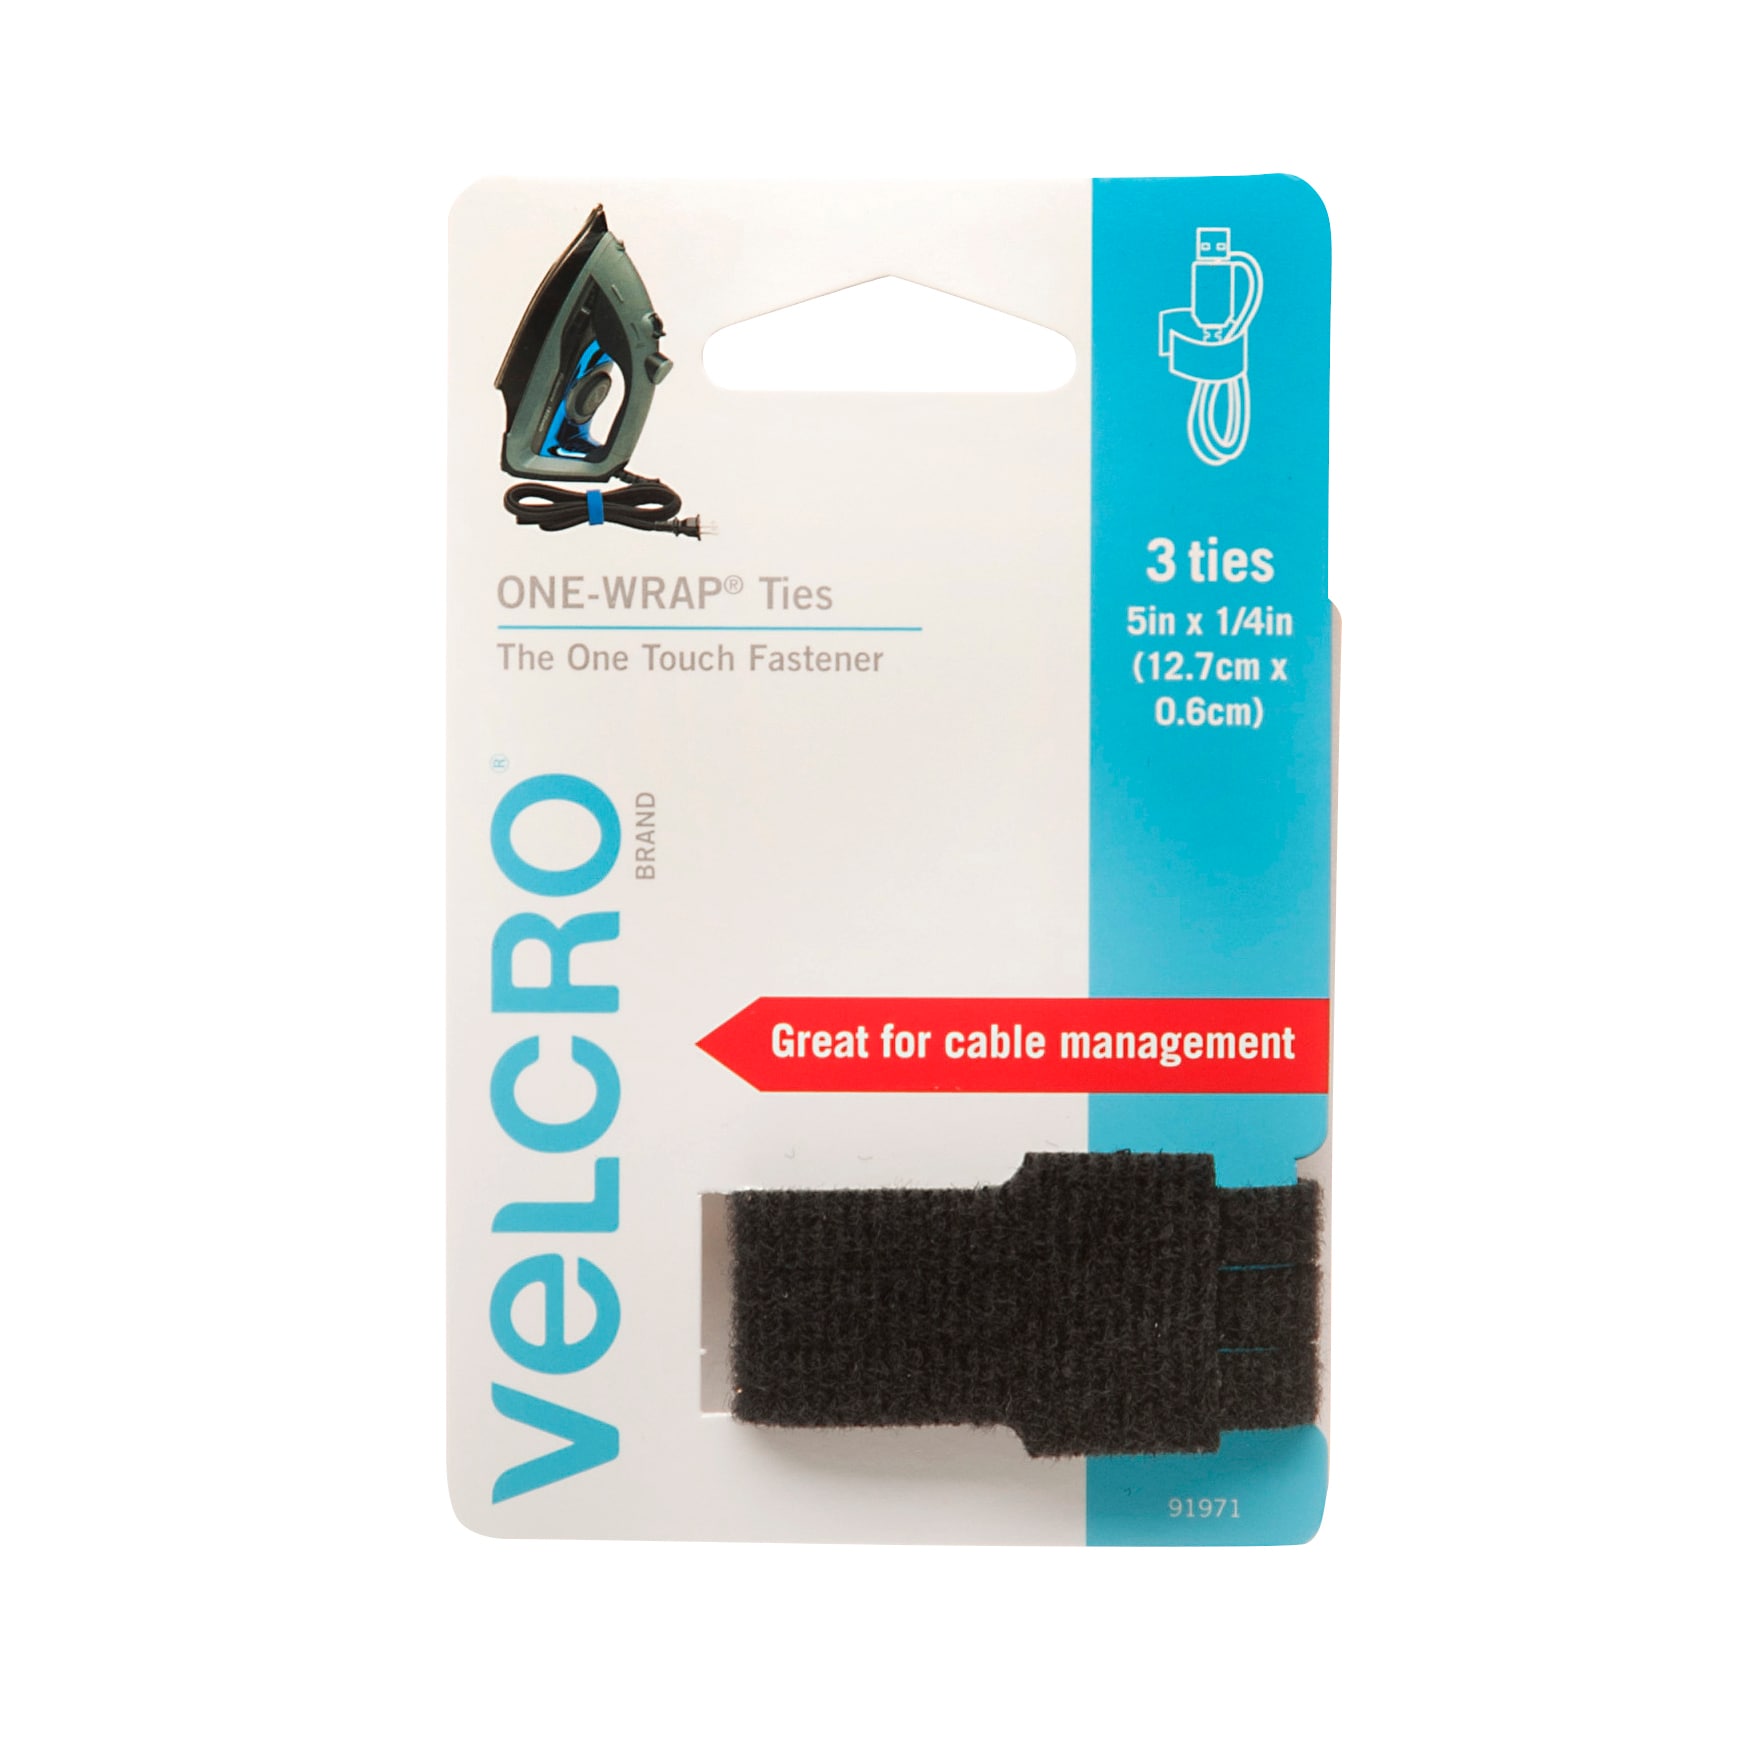 Velcro Brand Alfa-Lok Fastener Strips - 4 Pack - Black 3 x 1 in